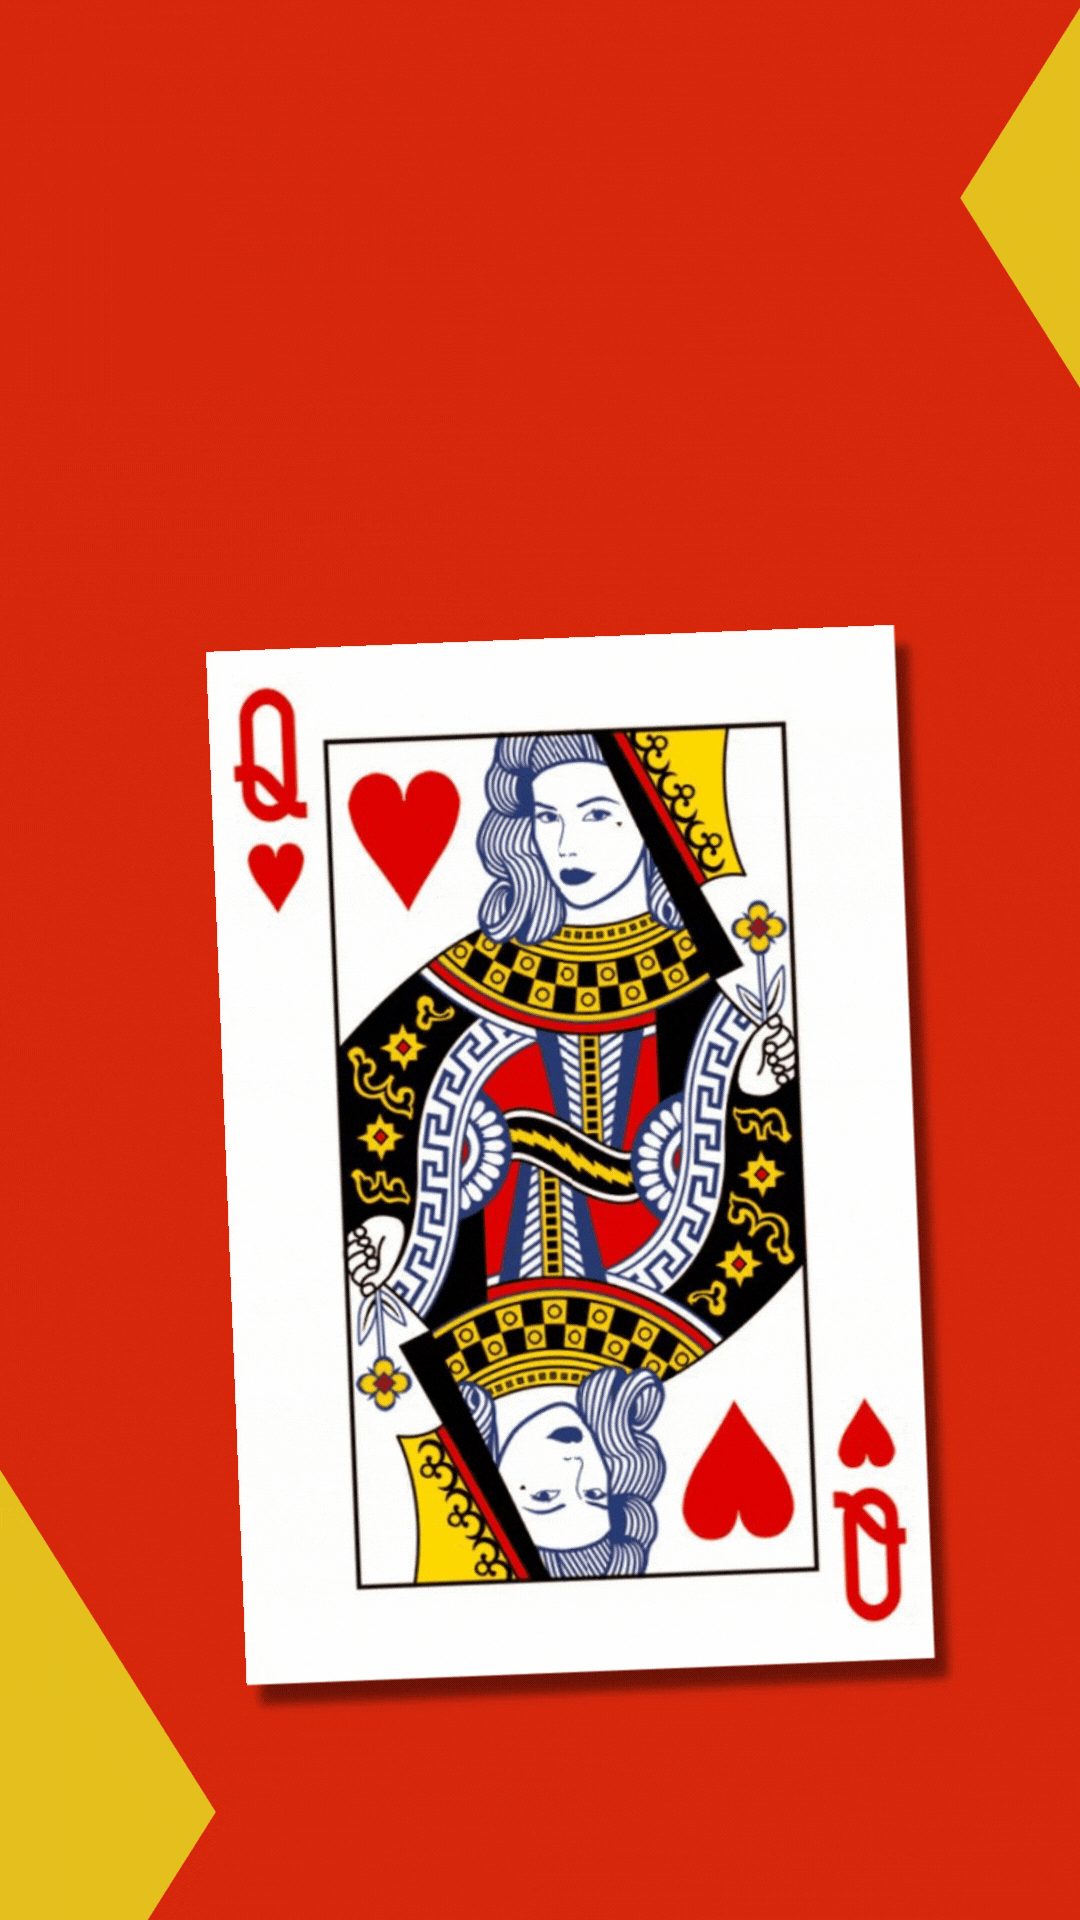 Queen of Hearts Ecards 